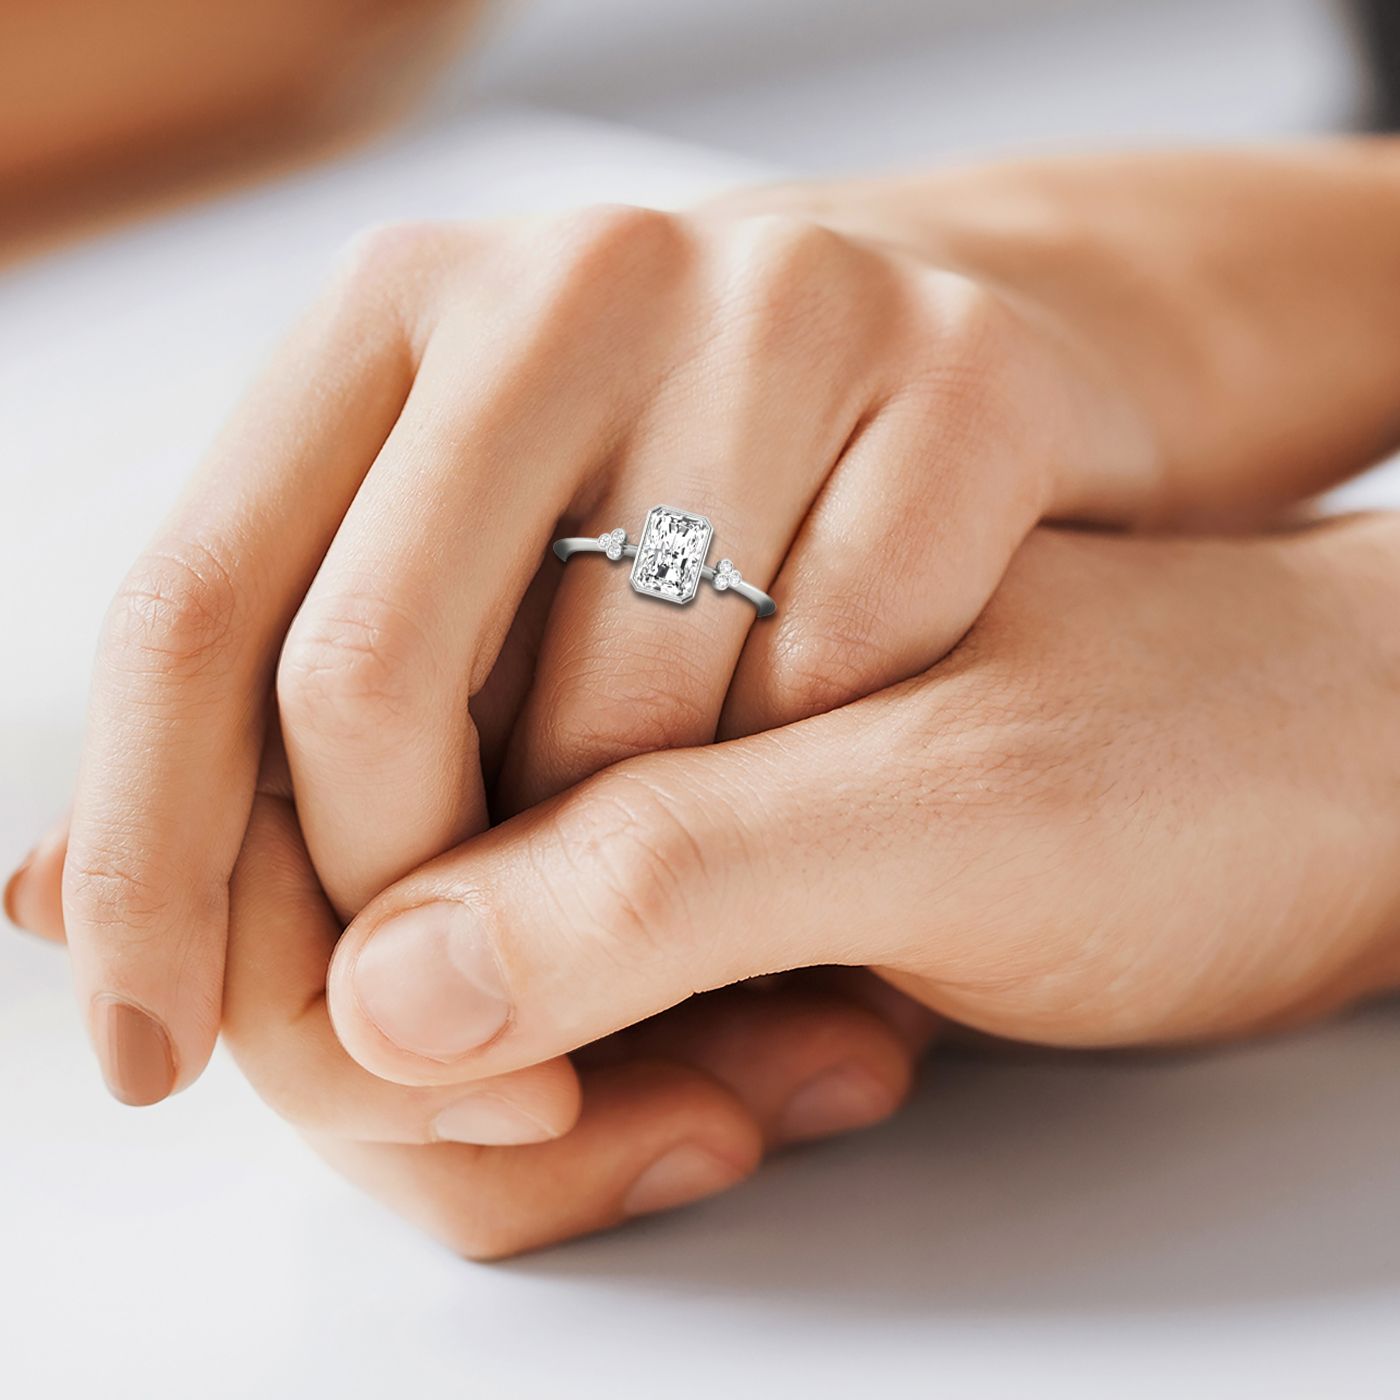 14kw Bezel Set Radiant Engagement Ring With 6 Clover Bezel Set Round Diamonds On Shank